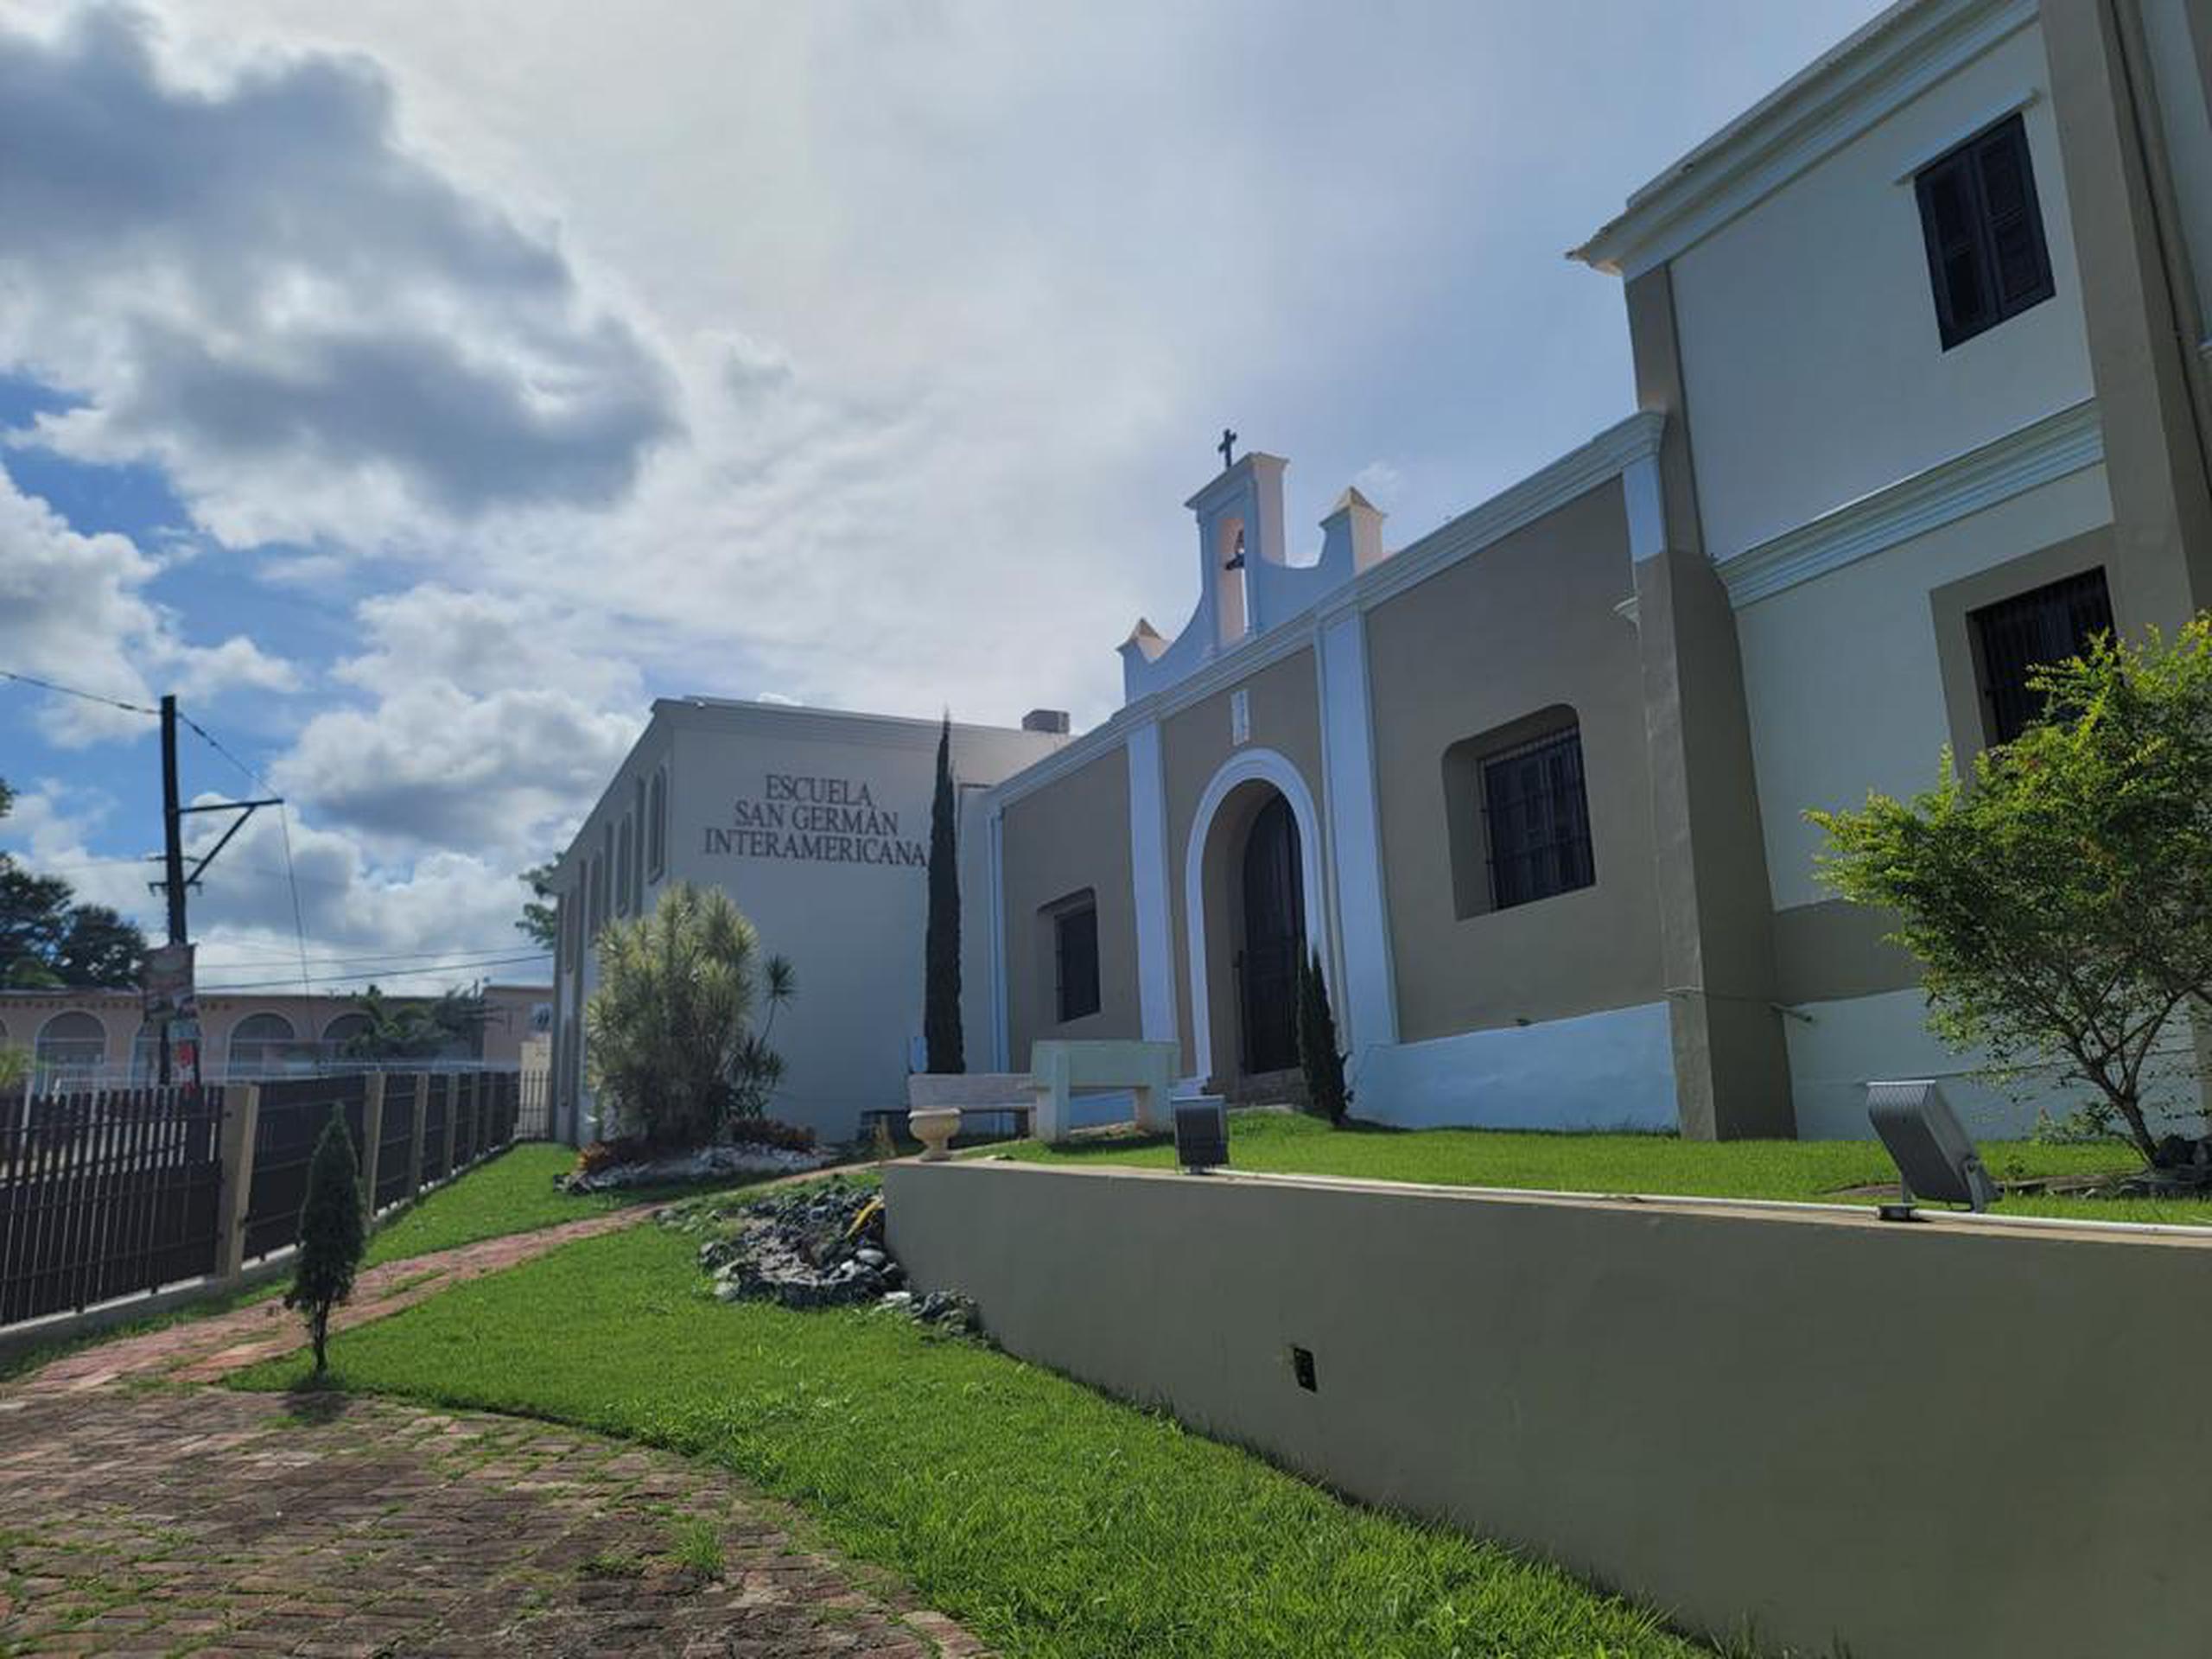 Escuela San Germán Interamericana